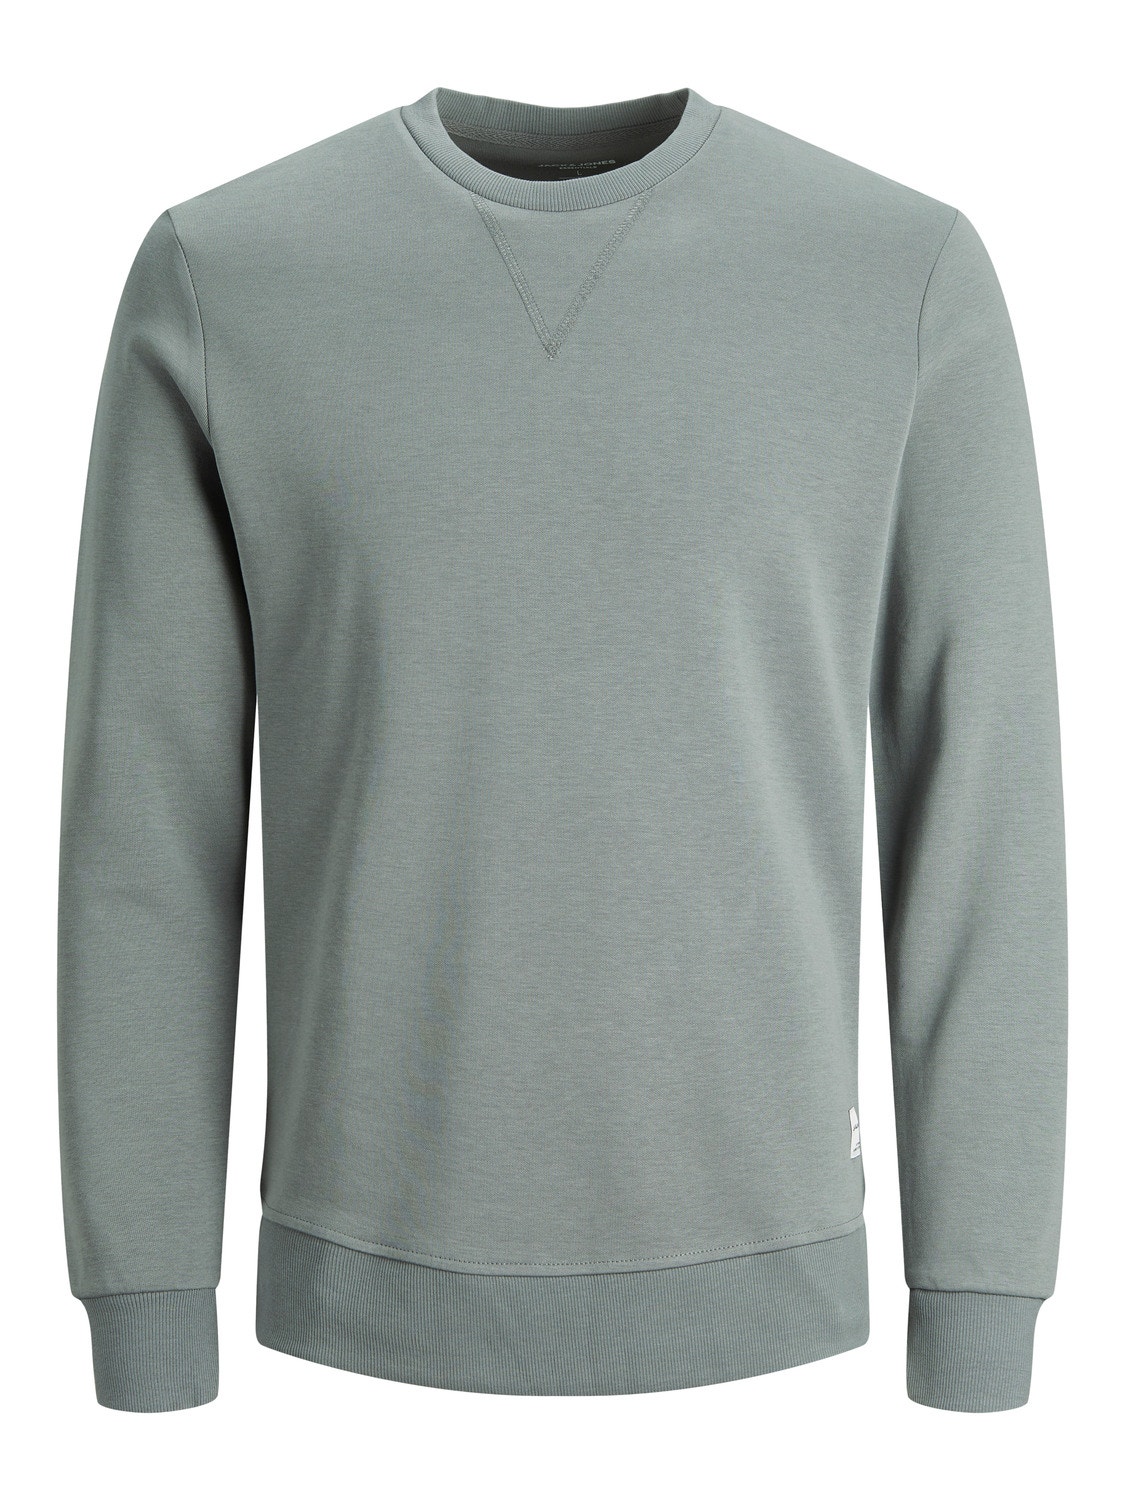 Jack & Jones Plain Sweatshirt -Sedona Sage - 12181903